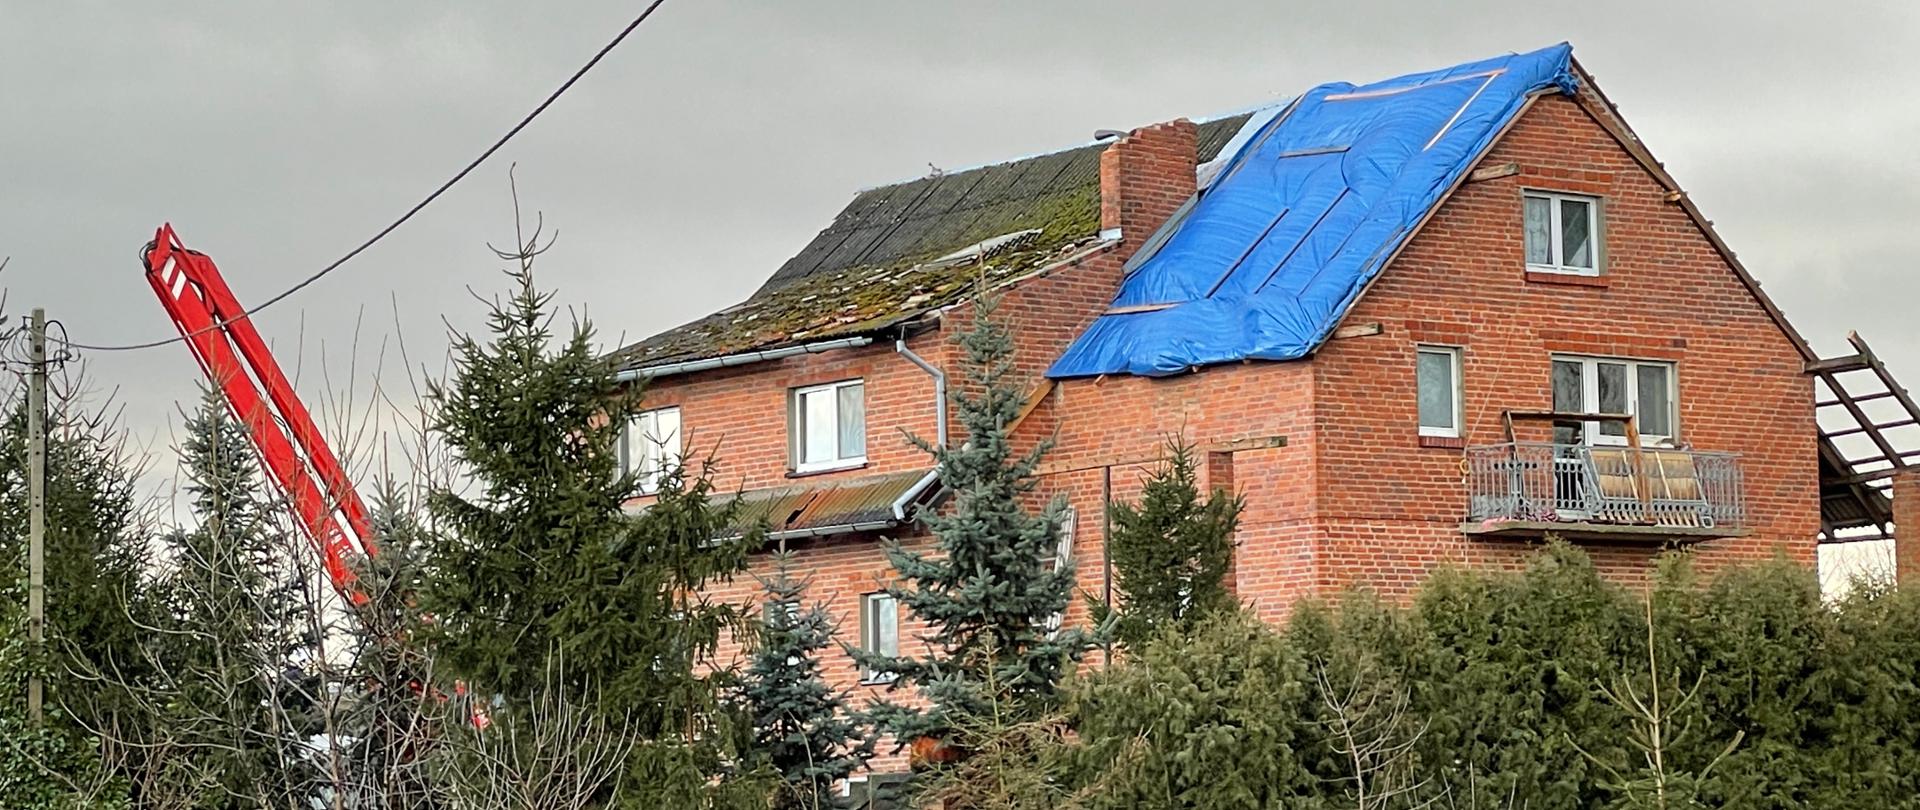 Budynek mieszkalny z czerwonej cegły na 1/3 dachu budynku założona niebieska plandeka przed budynkiem drzewa iglaste zboku widoczne ramie podnośnika hydraulicznego